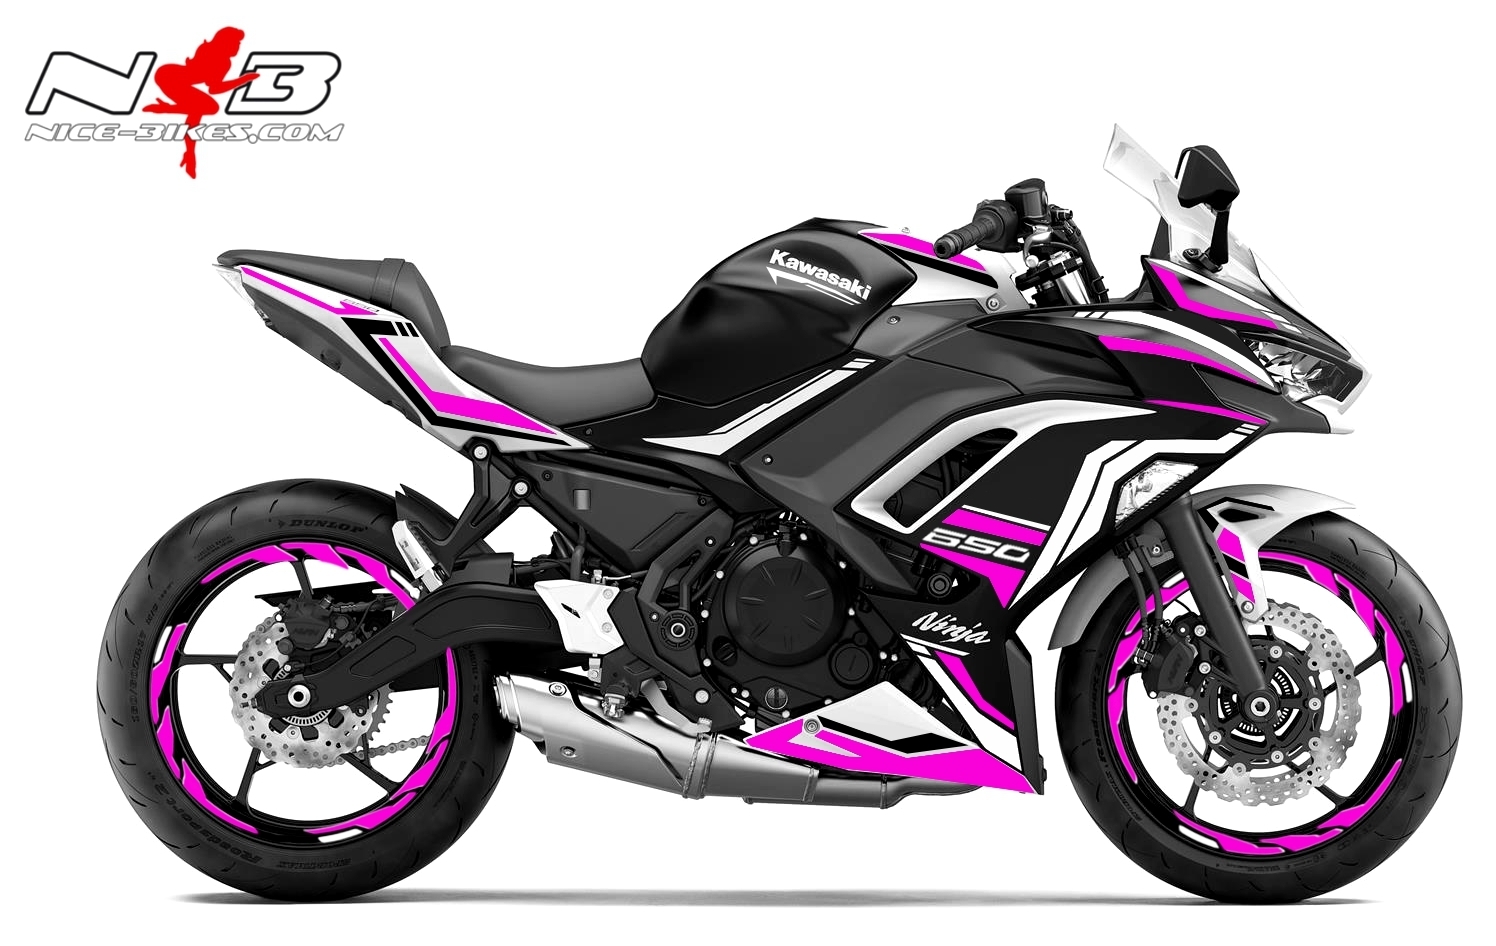 Foliendesign Ninja 650 Bj. 2020 Pretty Pink